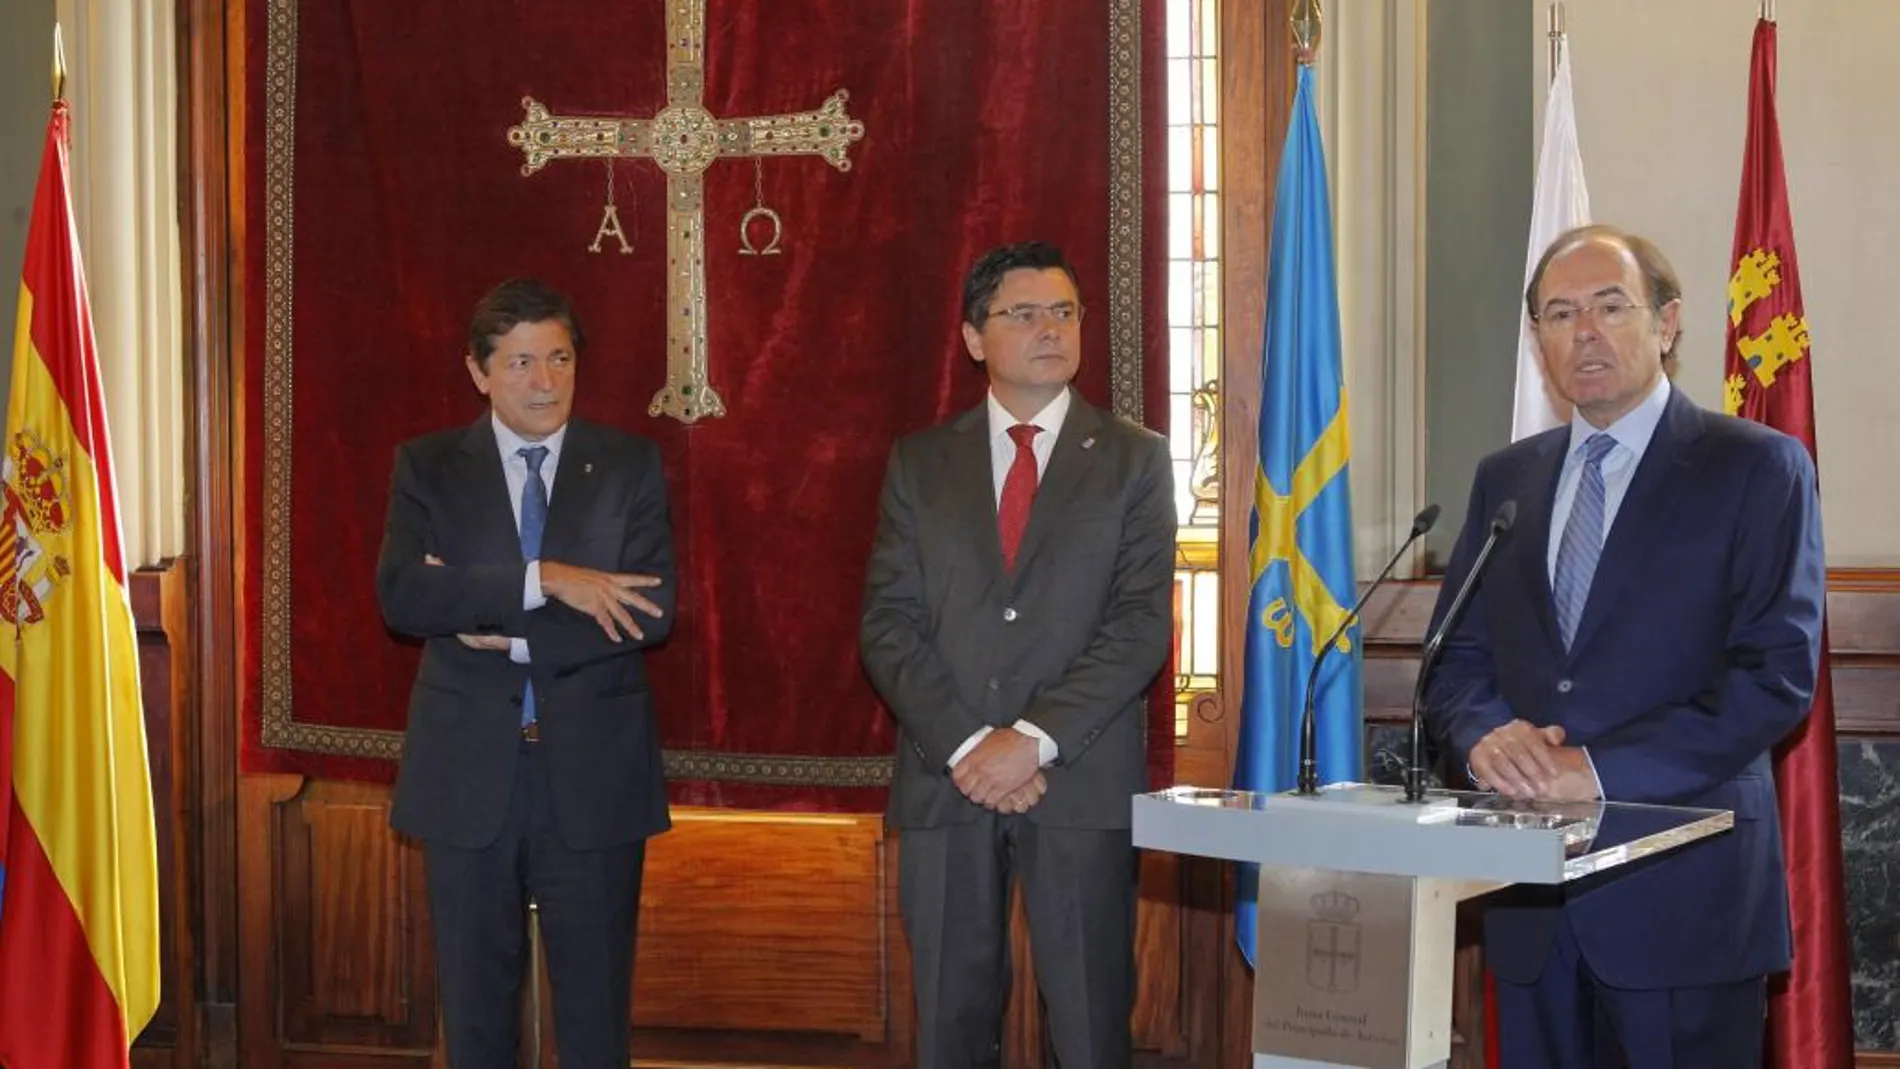 El presidente del Senado, Pío García Escudero (d), acompañado por el presidente del Principado, Javier Fernandez (i) y el presidente de la junta general del Principado, Pedro Sanjurjo (c), durante su intervención en la apertura de la Conferencia de Presidentes de Parlamentos Autonómicos (Coprepa)